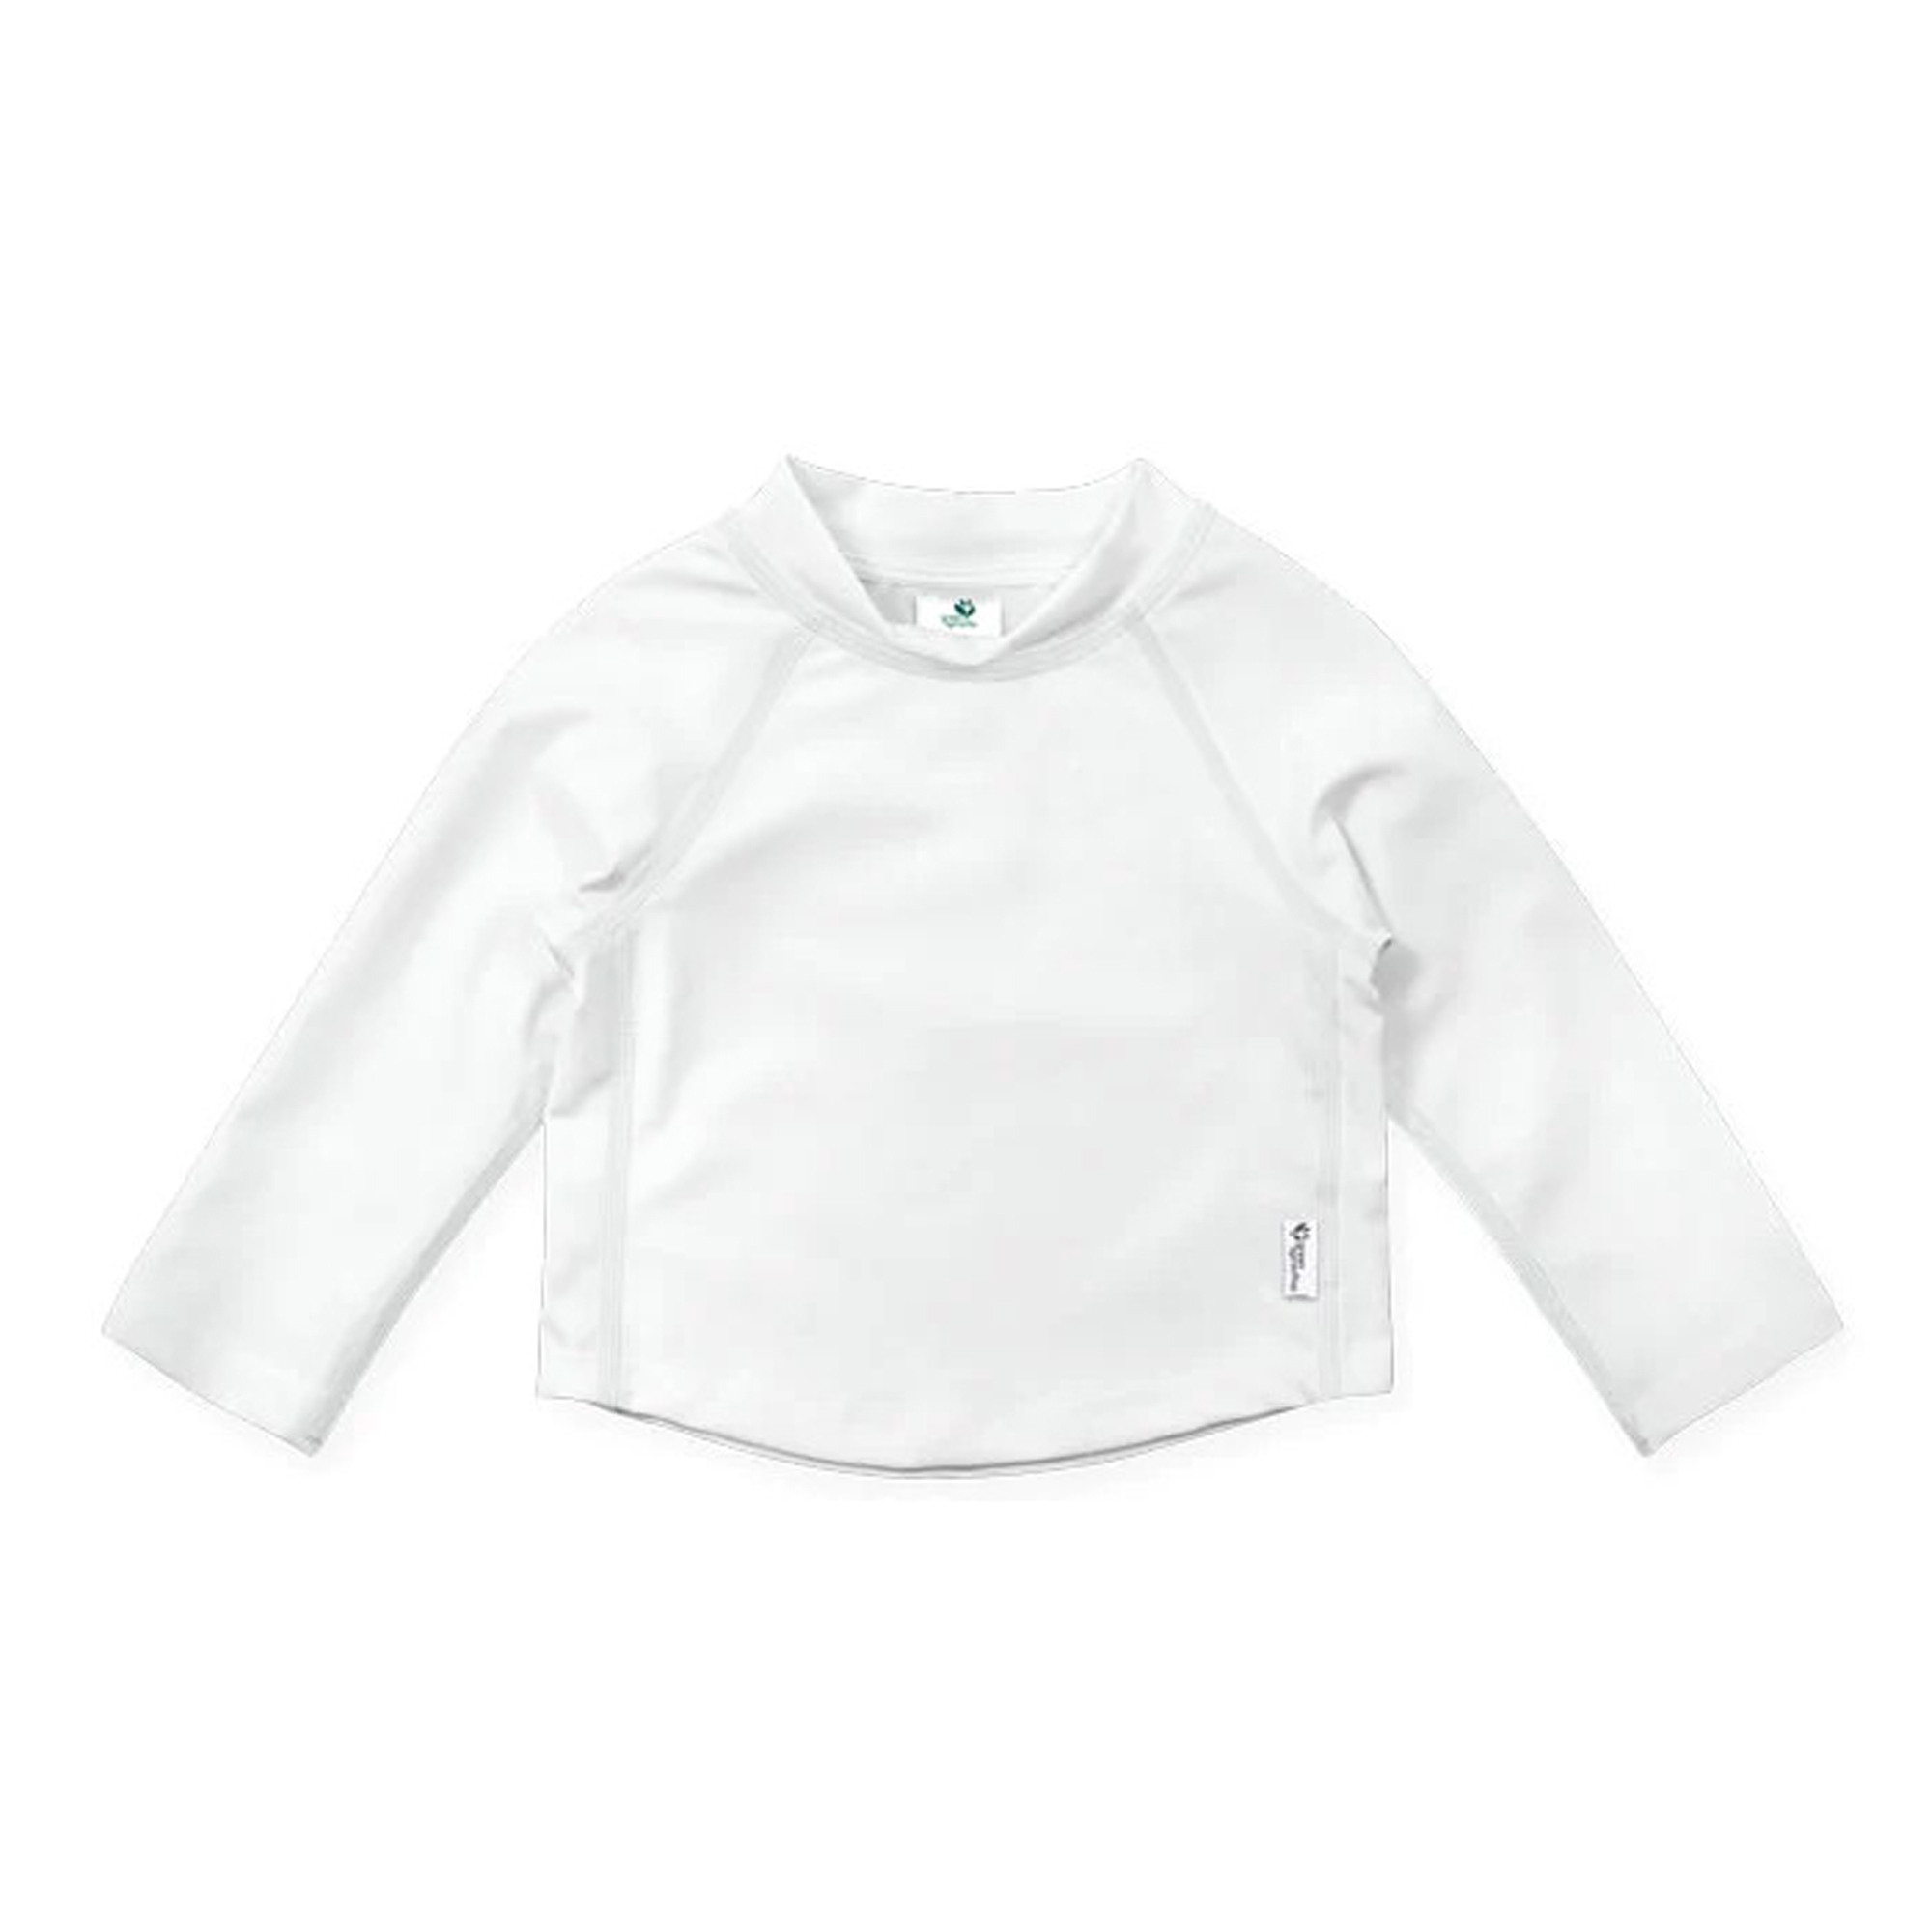 LS-Rashguard-Shirt-White